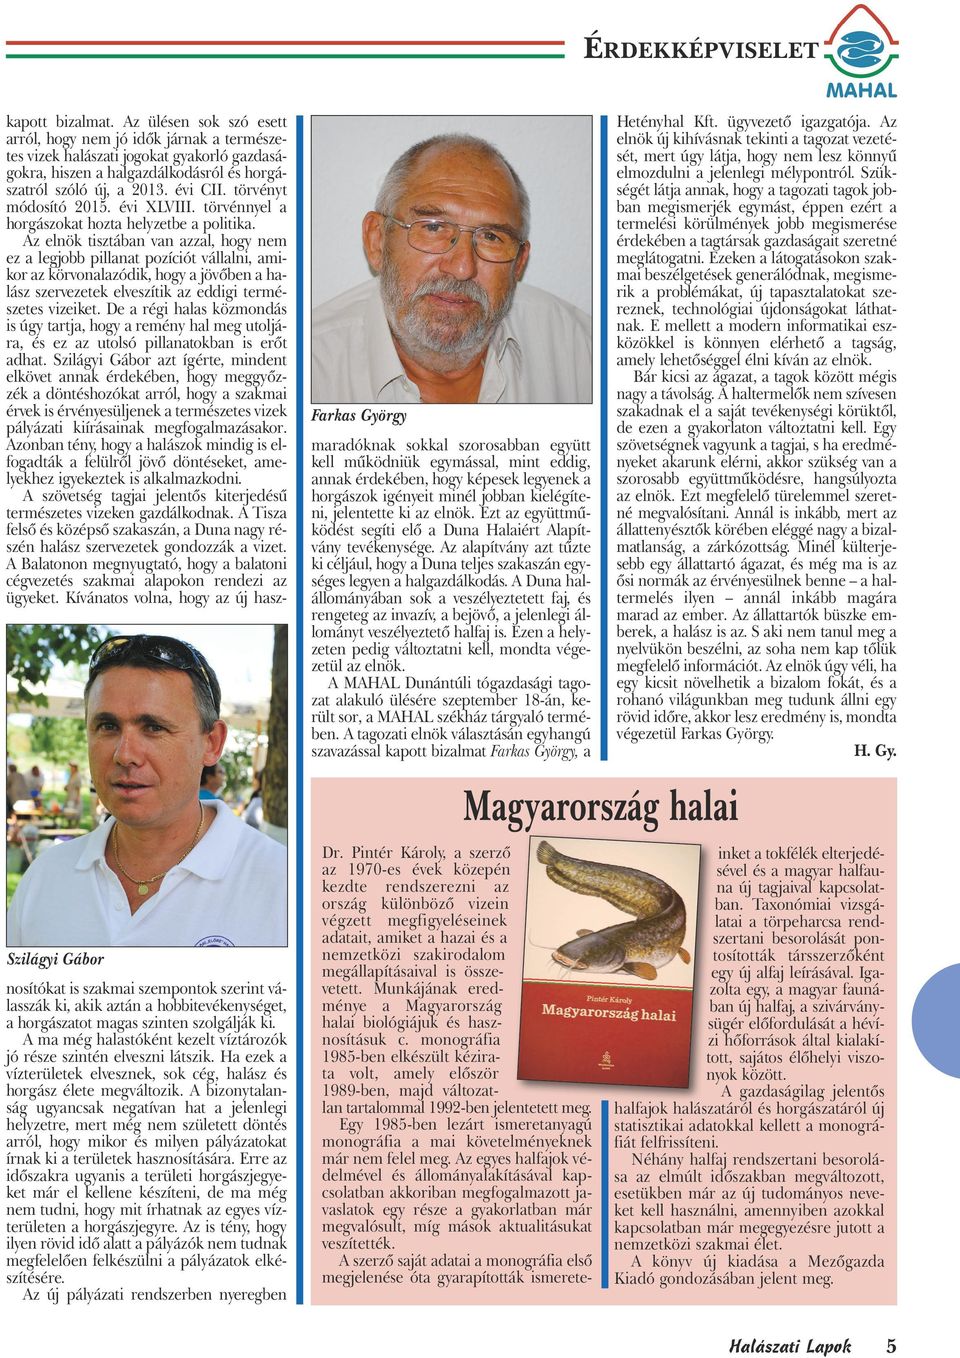 törvényt módosító 2015. évi XLVIII. törvénnyel a horgászokat hozta helyzetbe a politika.